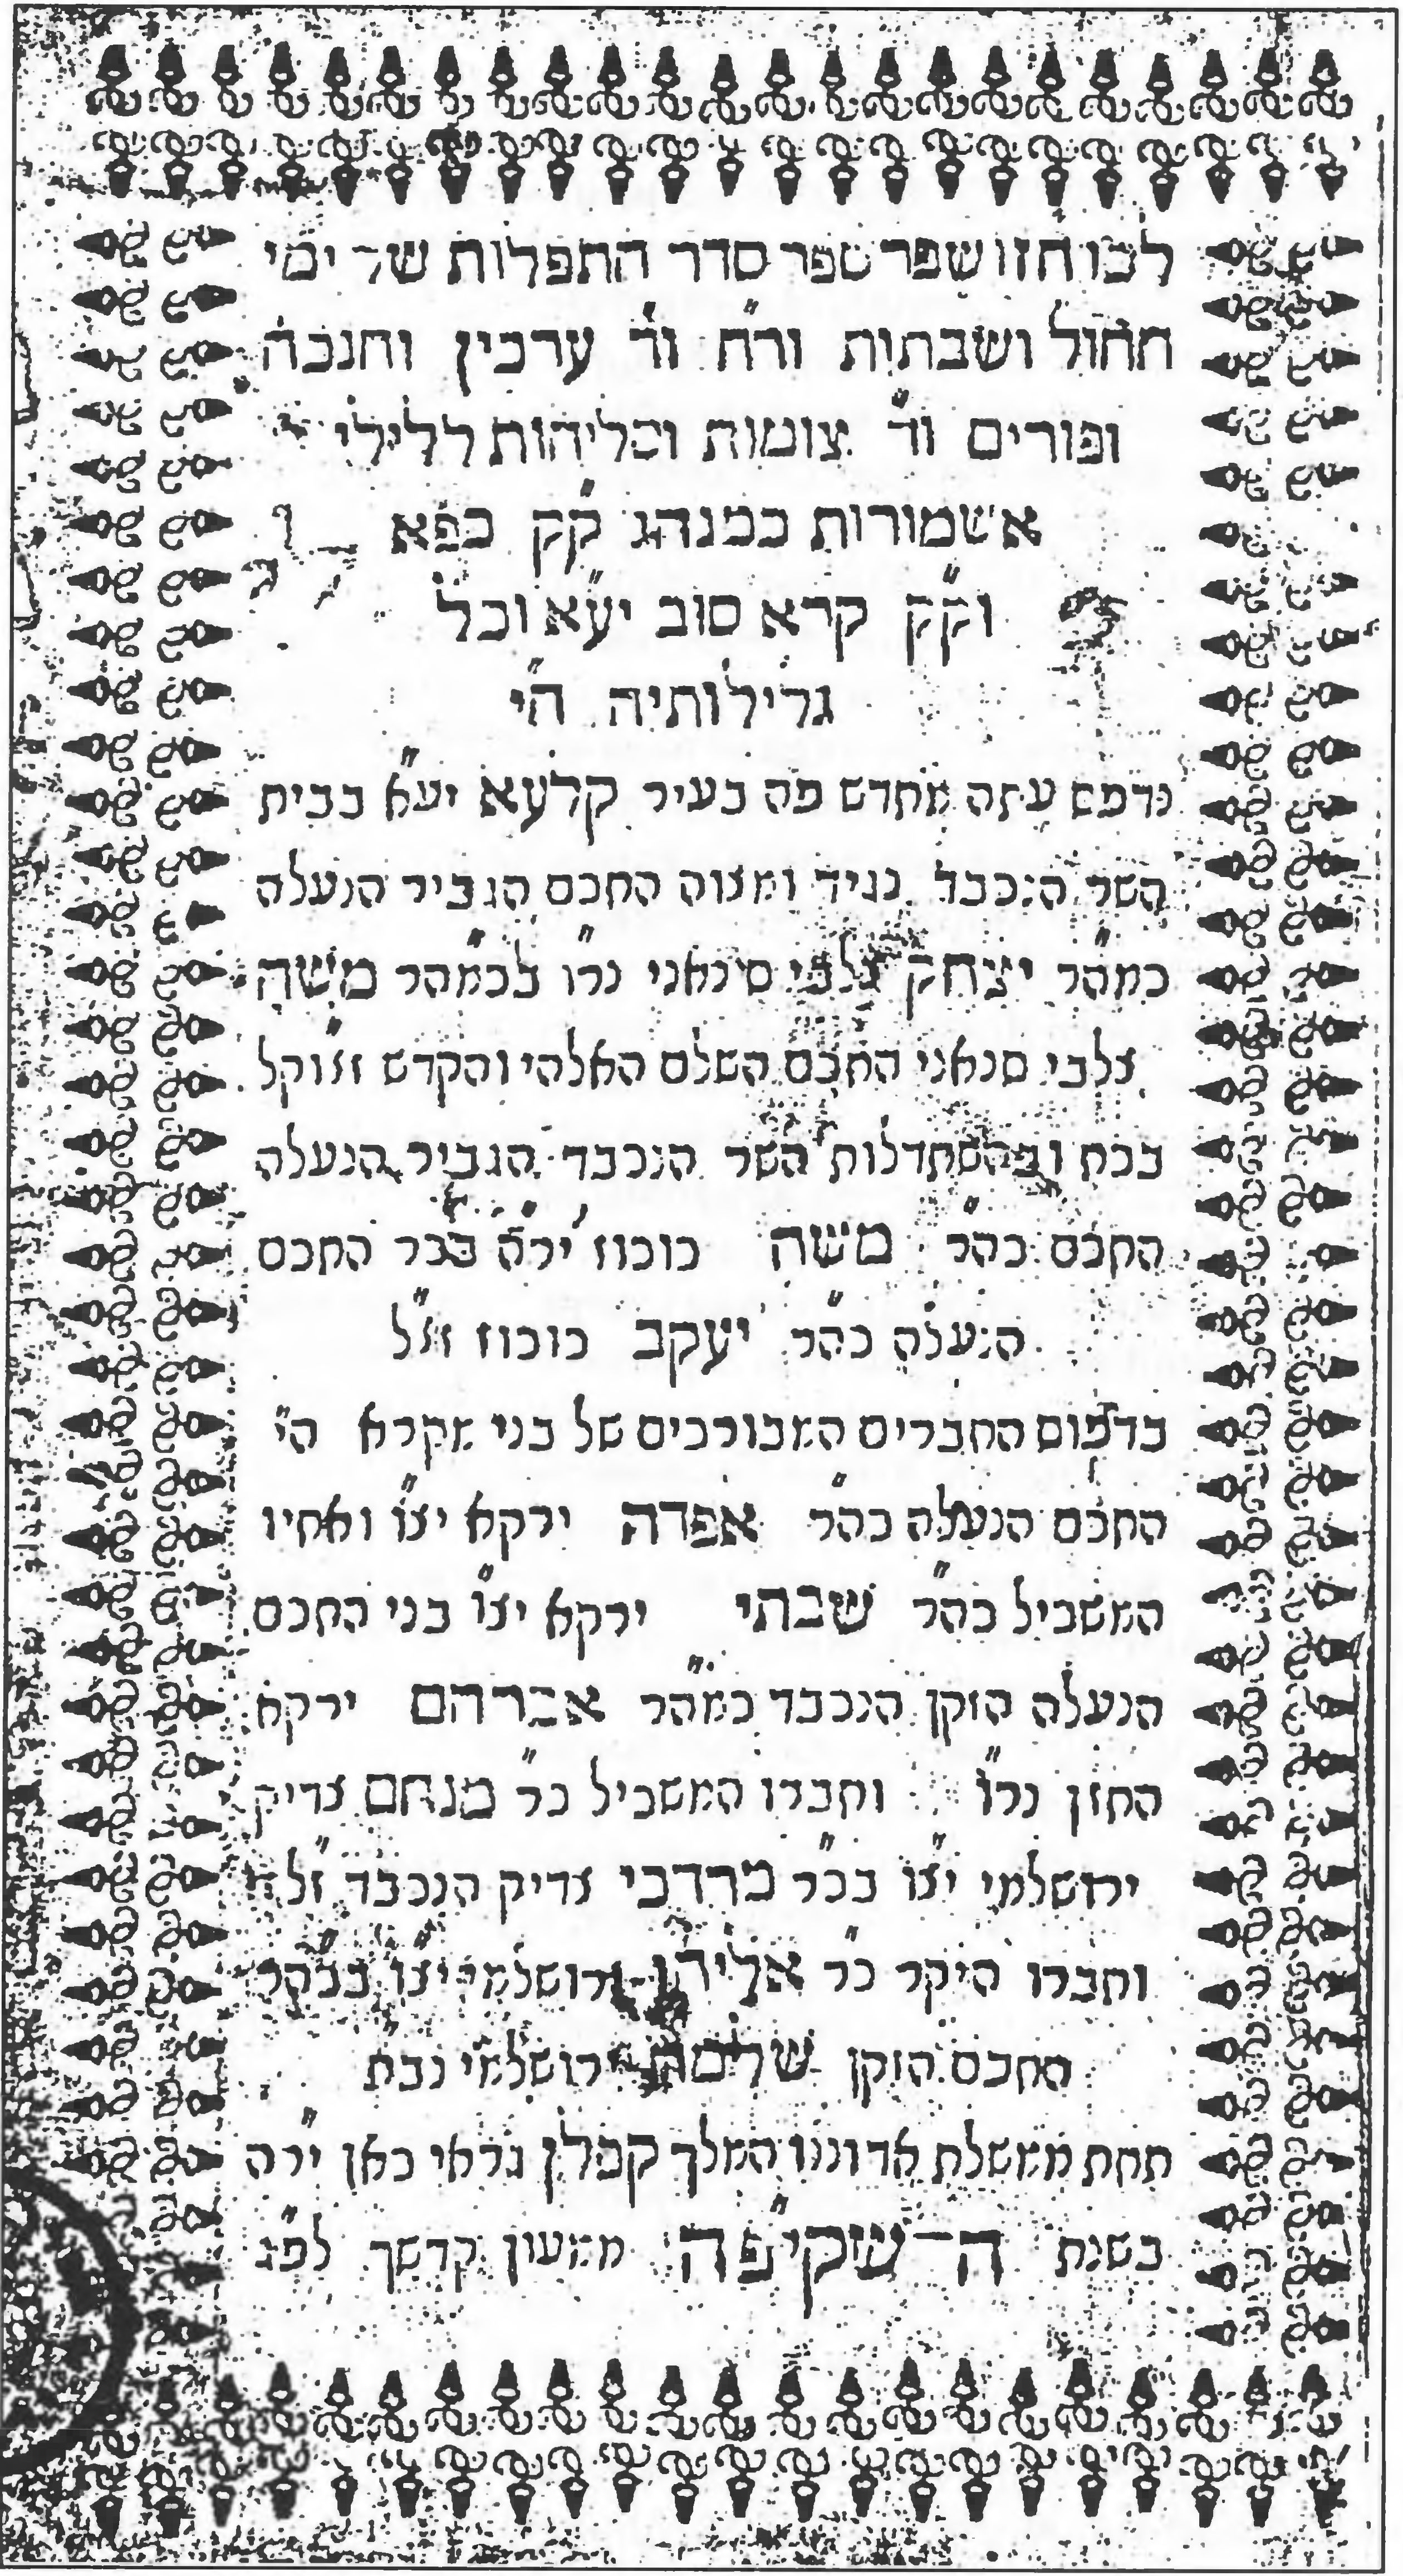 Титульная страница Крымчакского молитвенника 1734 года, отпечатанного в караимской типографии Чуфут-Кале